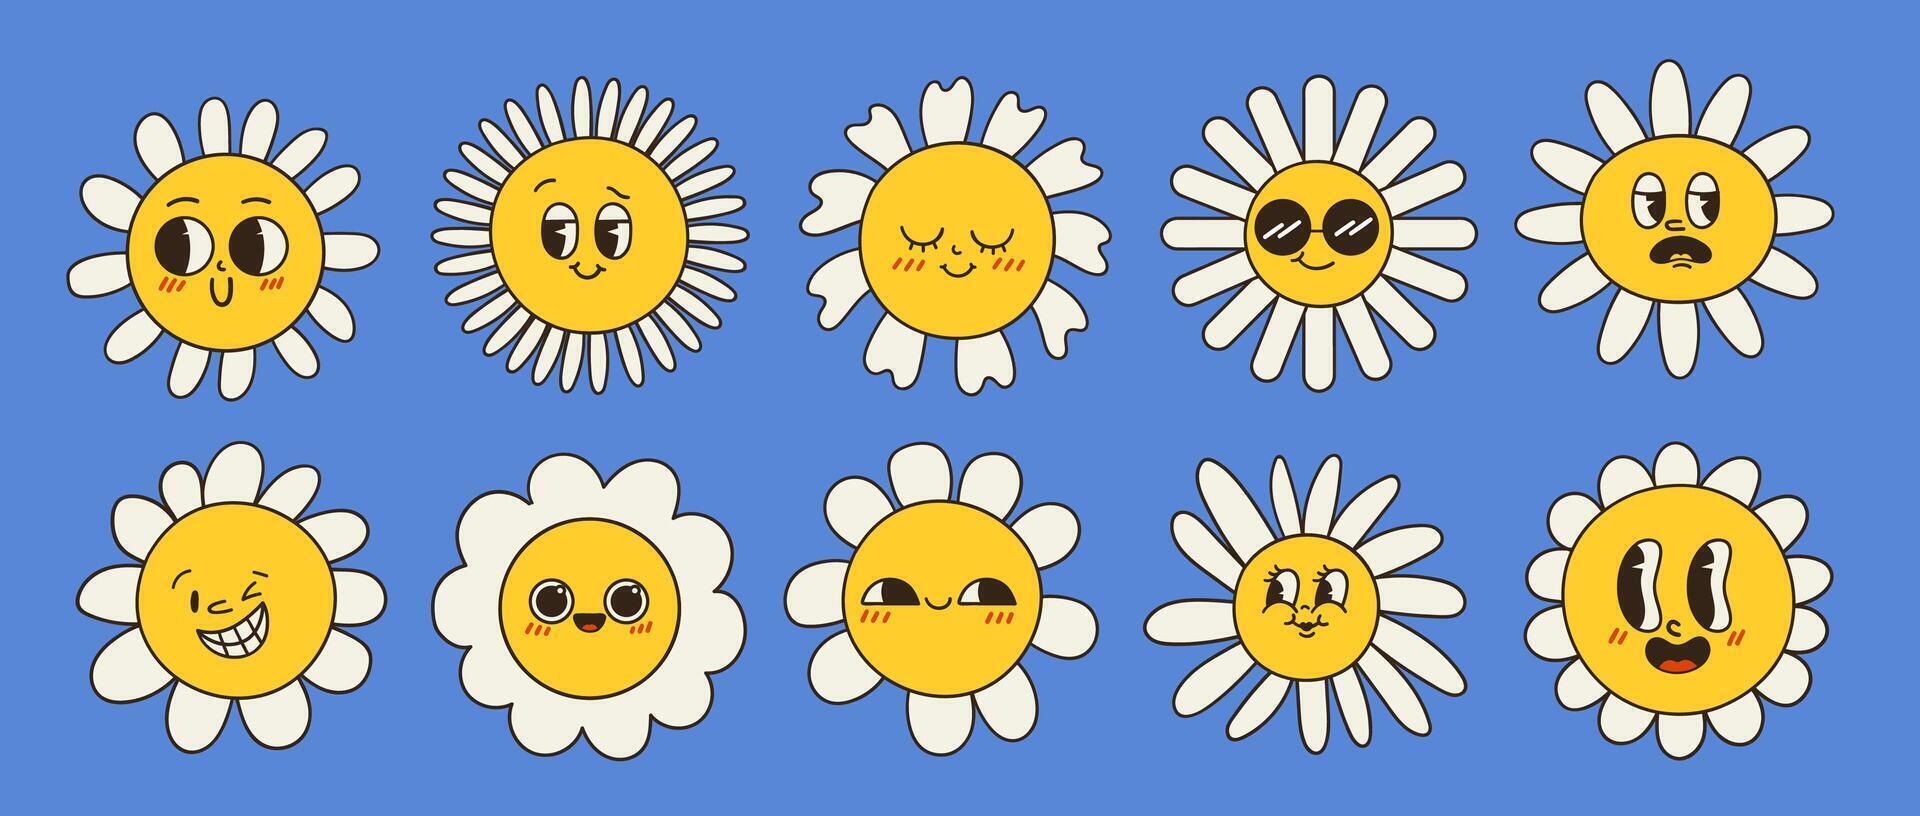 Sammlung von großartig Kamille Blumen. retro Gänseblümchen lächelt im Karikatur Stil. einstellen von glücklich 70er Jahre Aufkleber. Vektor Grafik Illustration im Hippe Stil.